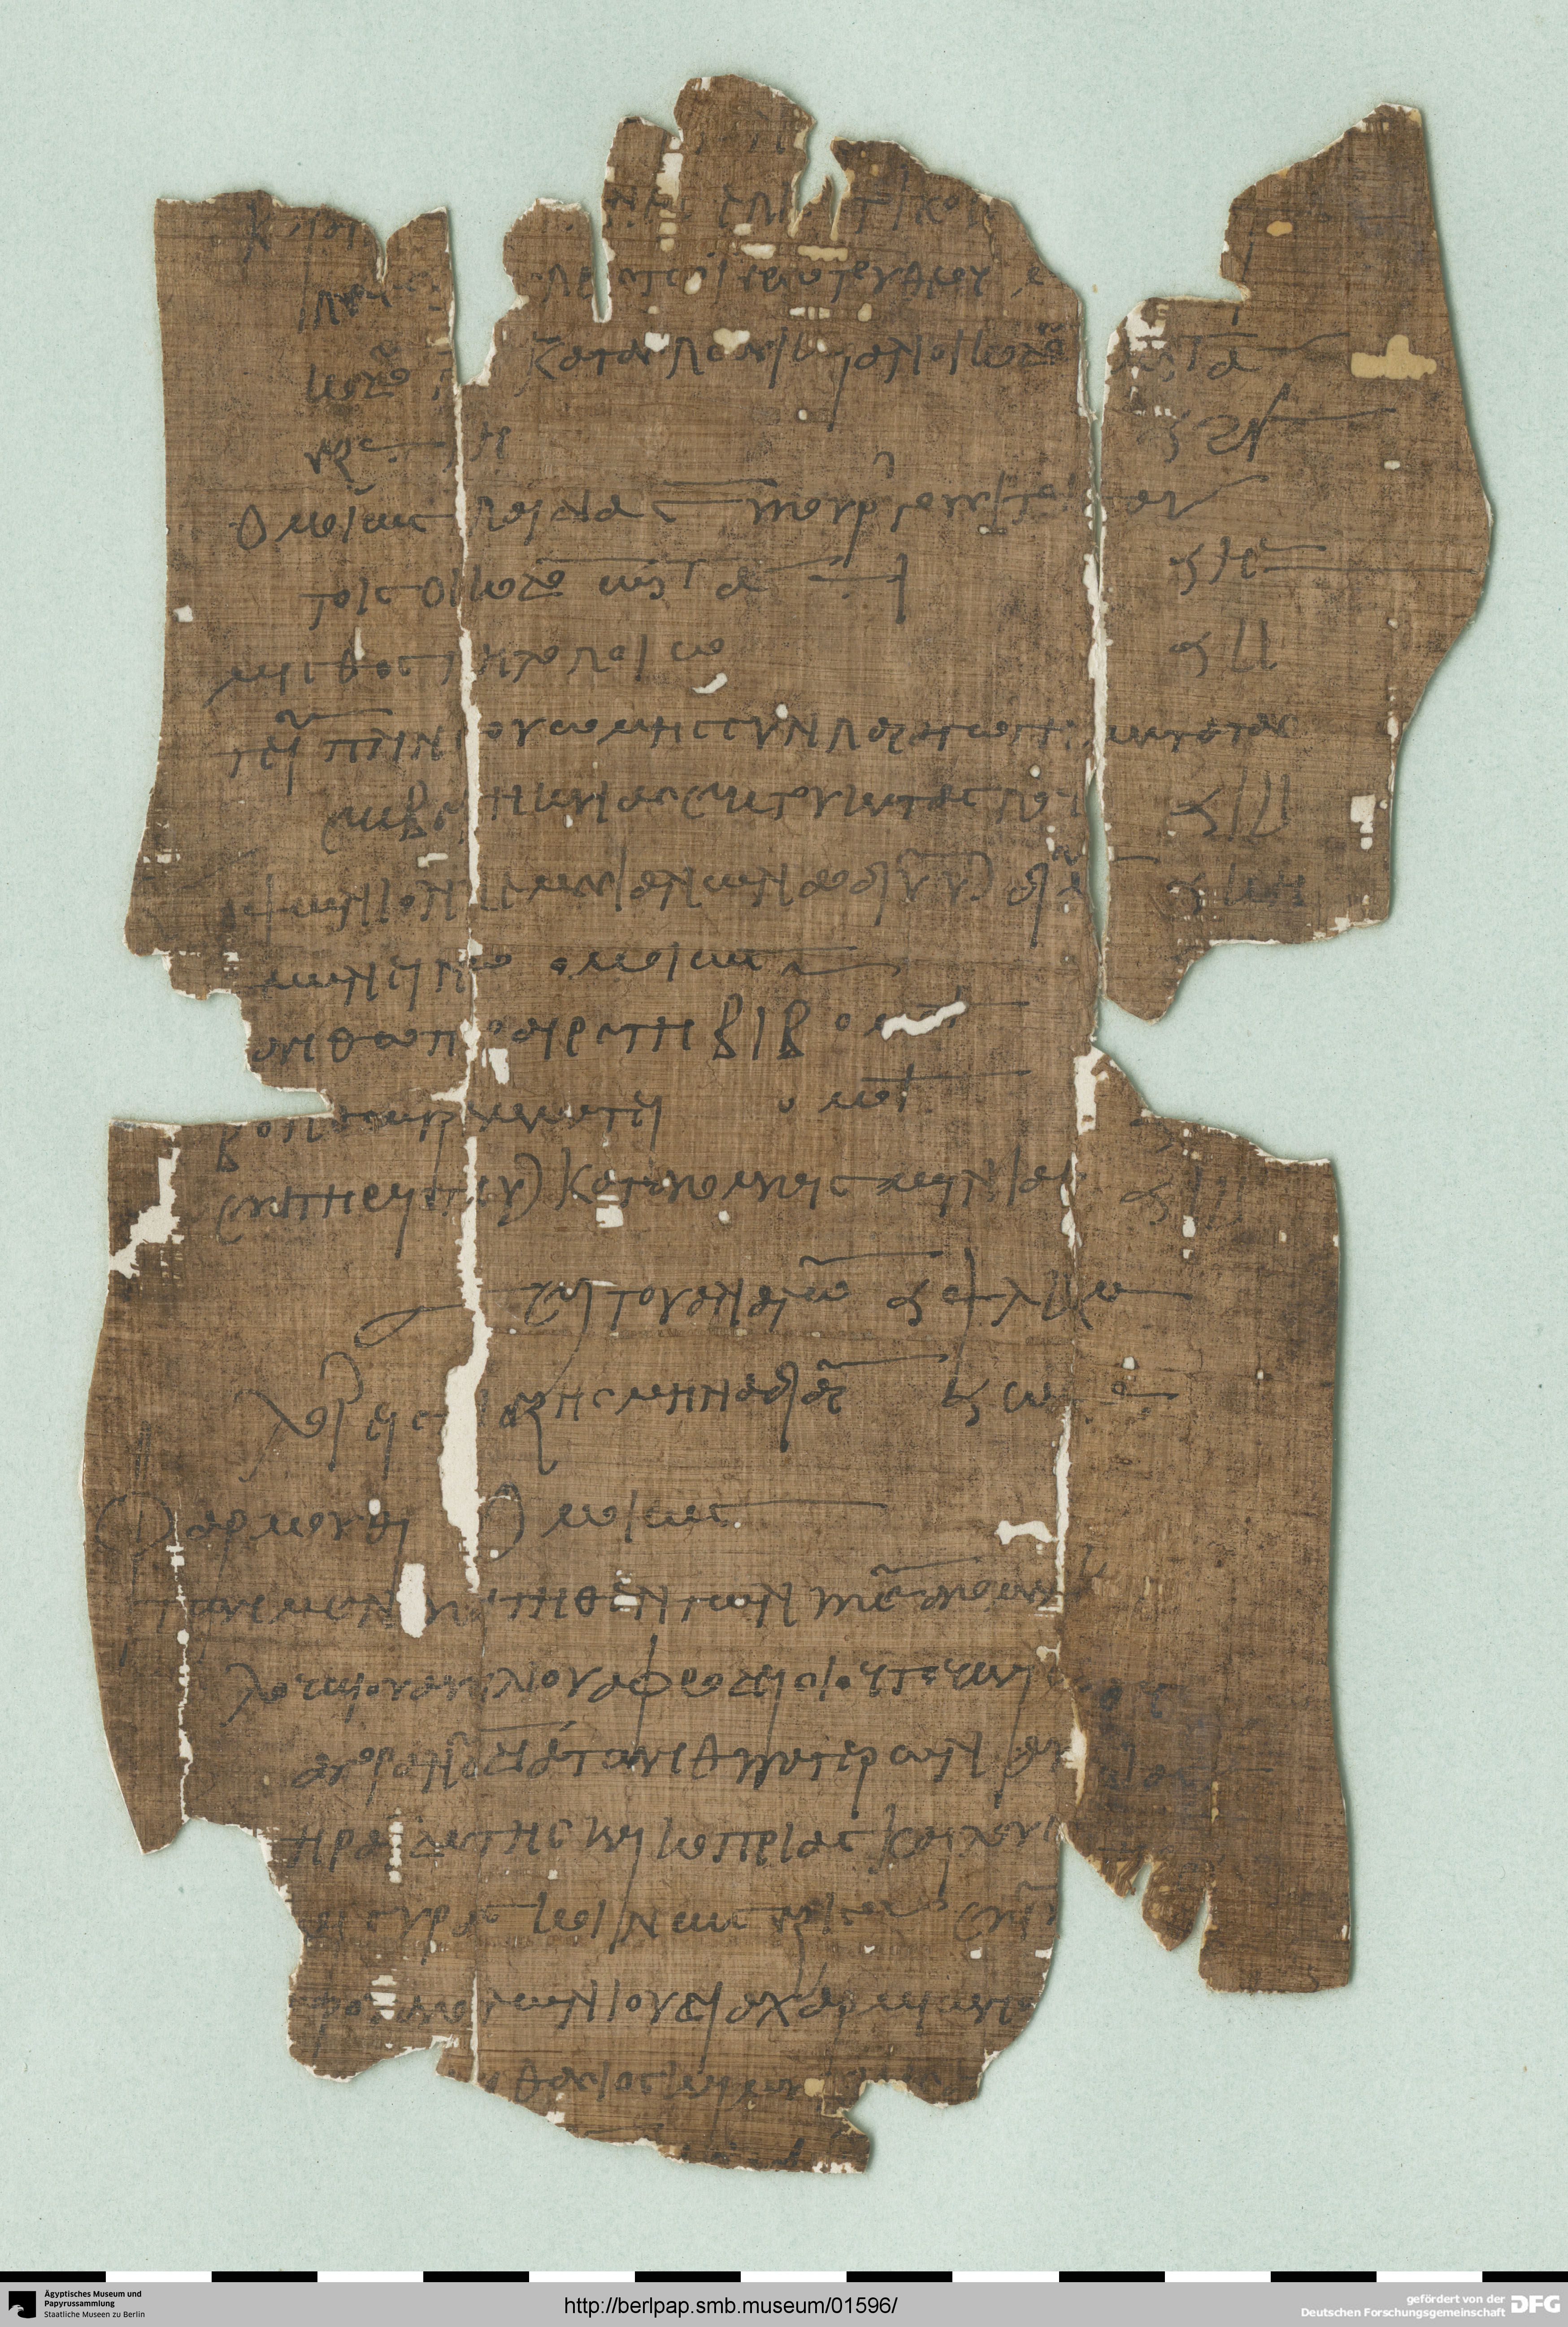 http://berlpap.smb.museum/Original/P_05088_R_001.jpg (Ägyptisches Museum und Papyrussammlung, Staatliche Museen zu Berlin CC BY-NC-SA)